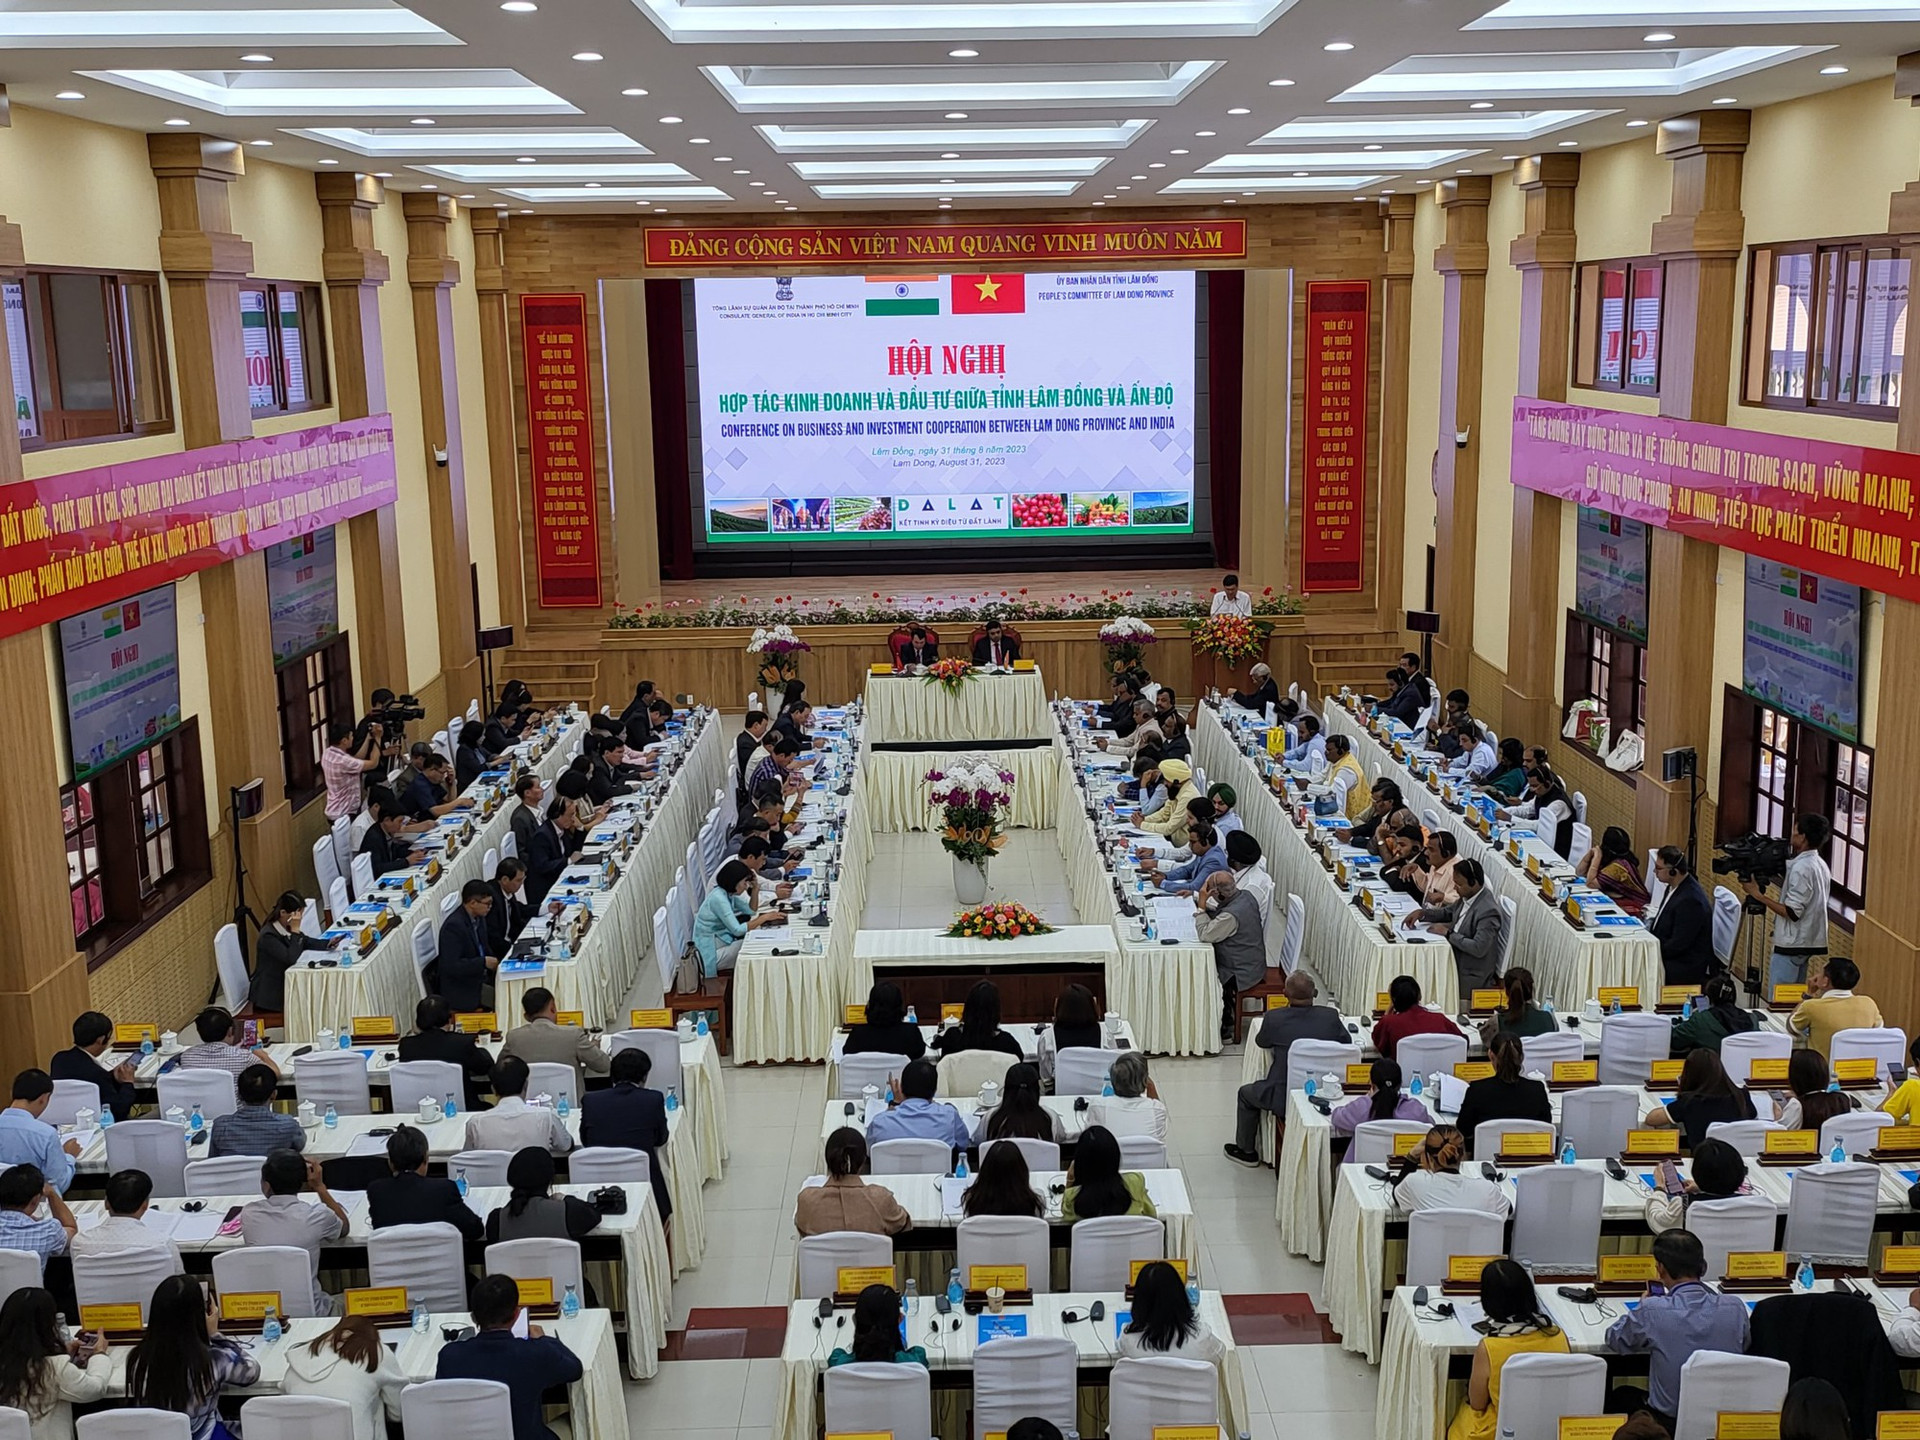 Ấn Độ cung cấp một thị trường khổng lồ cho Việt Nam - Ảnh 1.